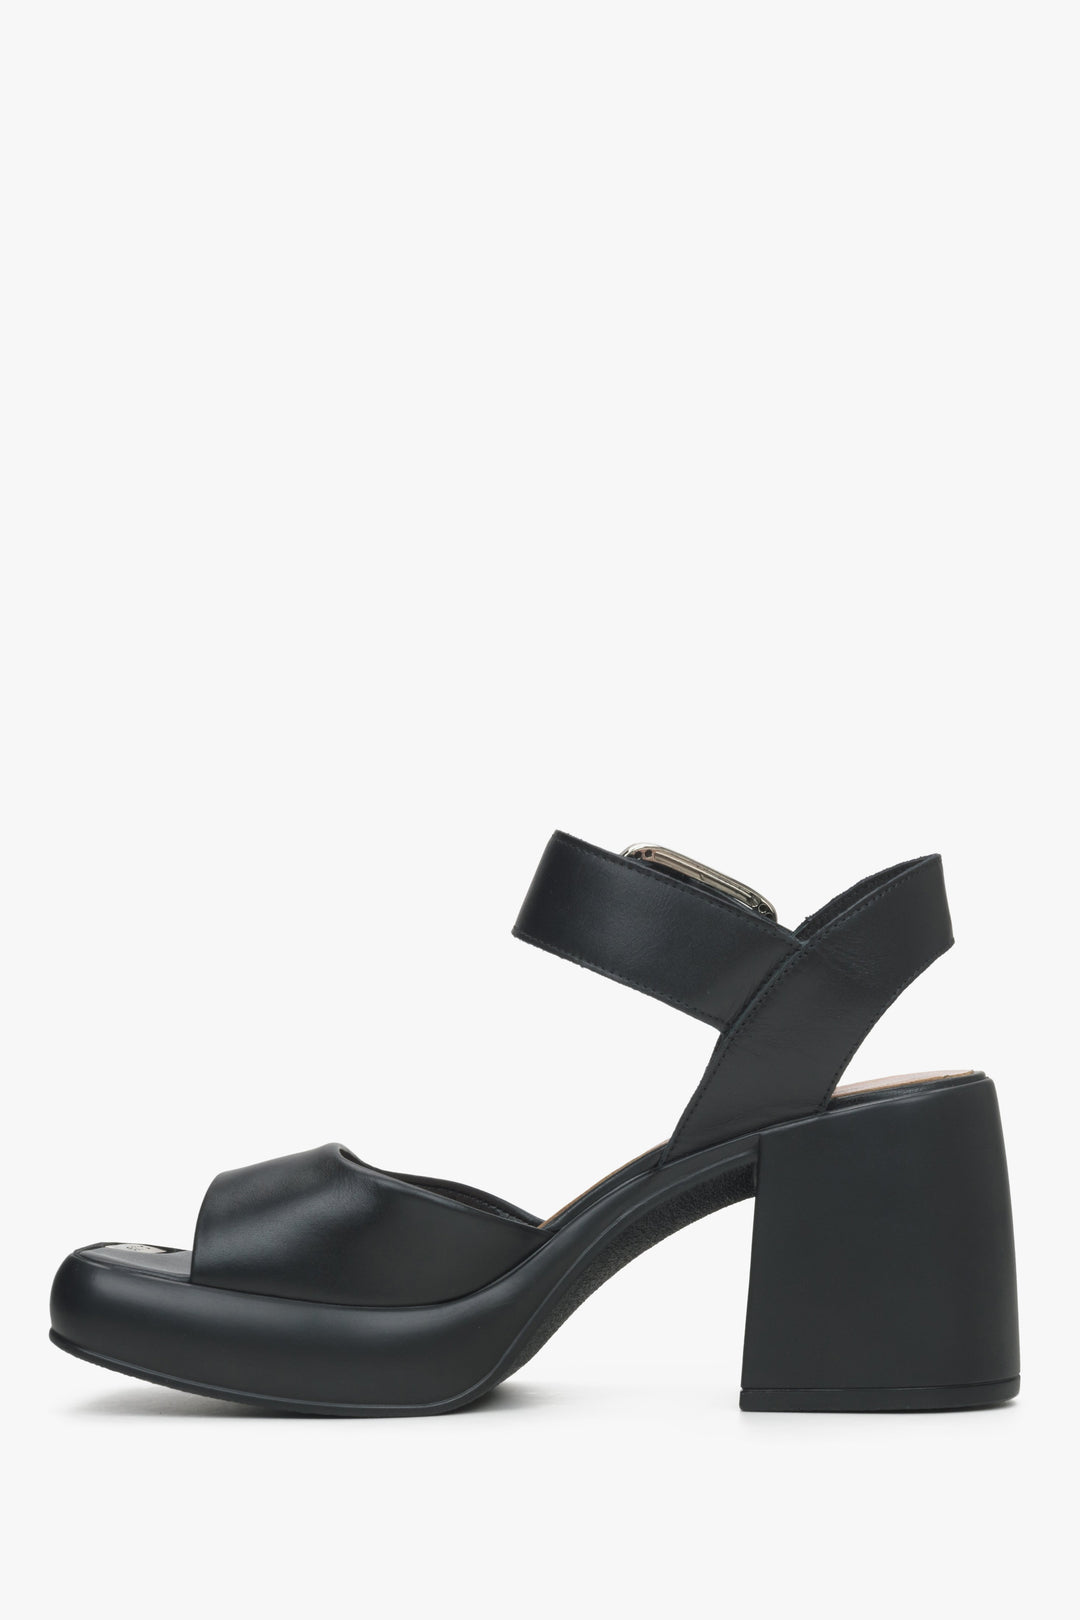 Stylowe czarne sandały damskie na stabilnym słupku marki Estro - profil buta.